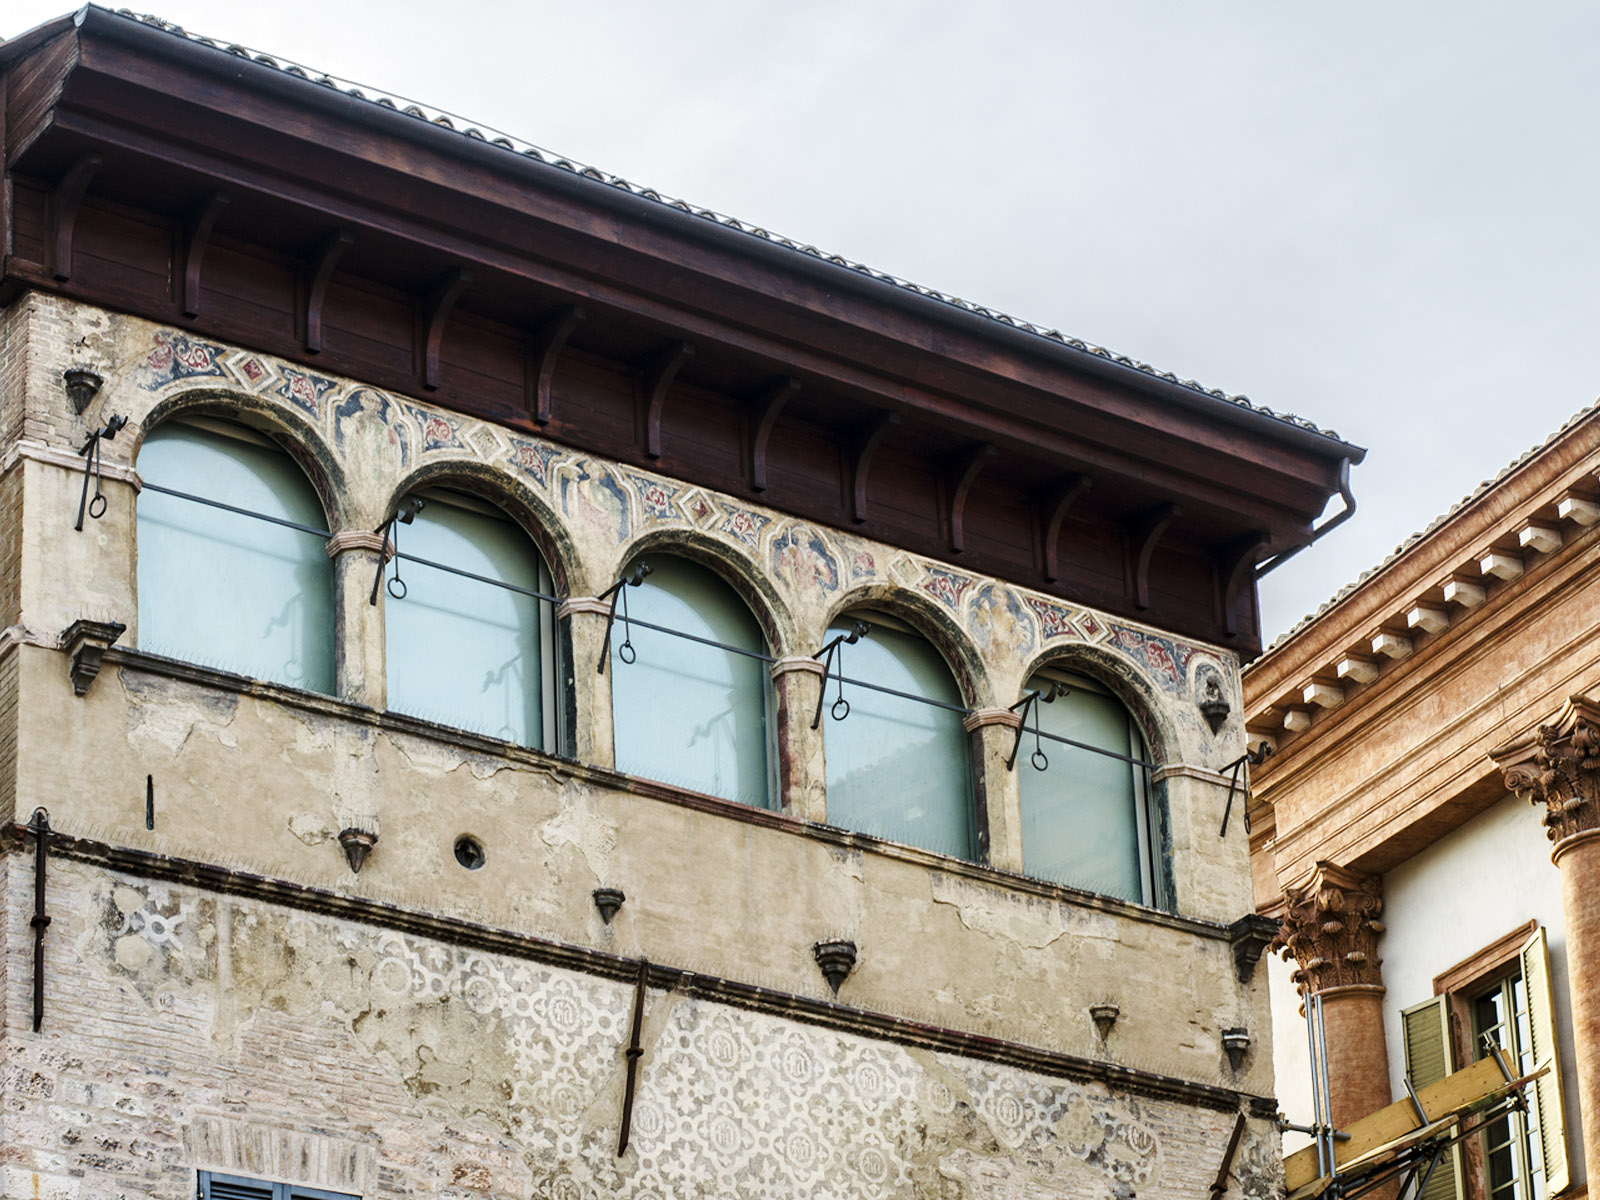 “Palazzo Orfini” and Palazzo Podestà” renovation